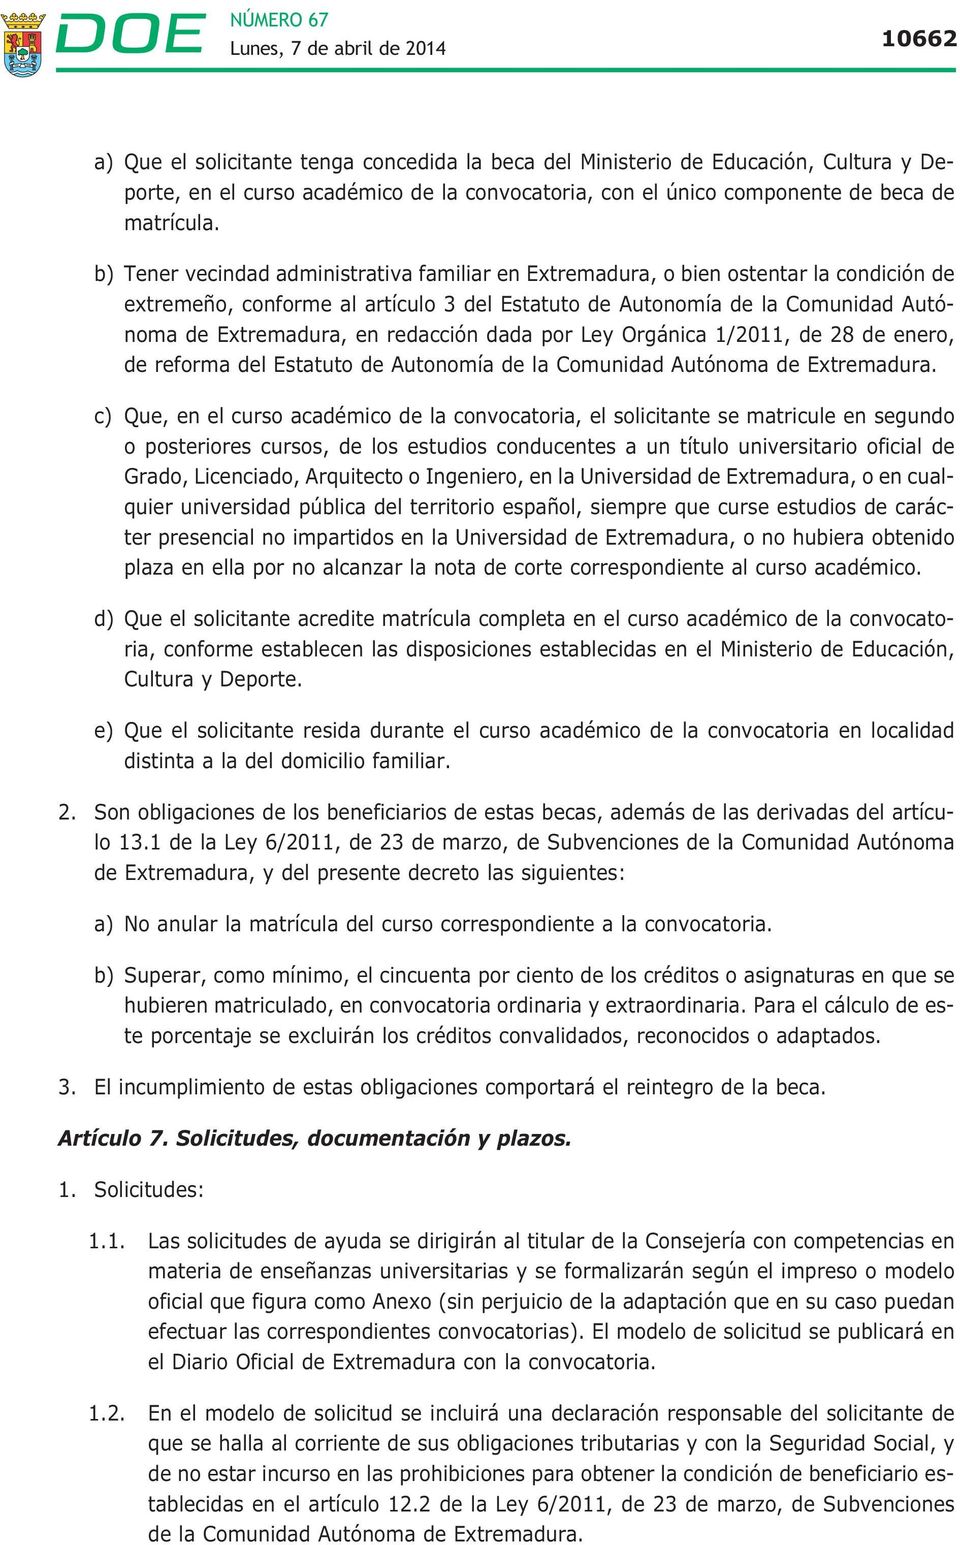 redacción dada por Ley Orgánica 1/2011, de 28 de enero, de reforma del Estatuto de Autonomía de la Comunidad Autónoma de Extremadura.